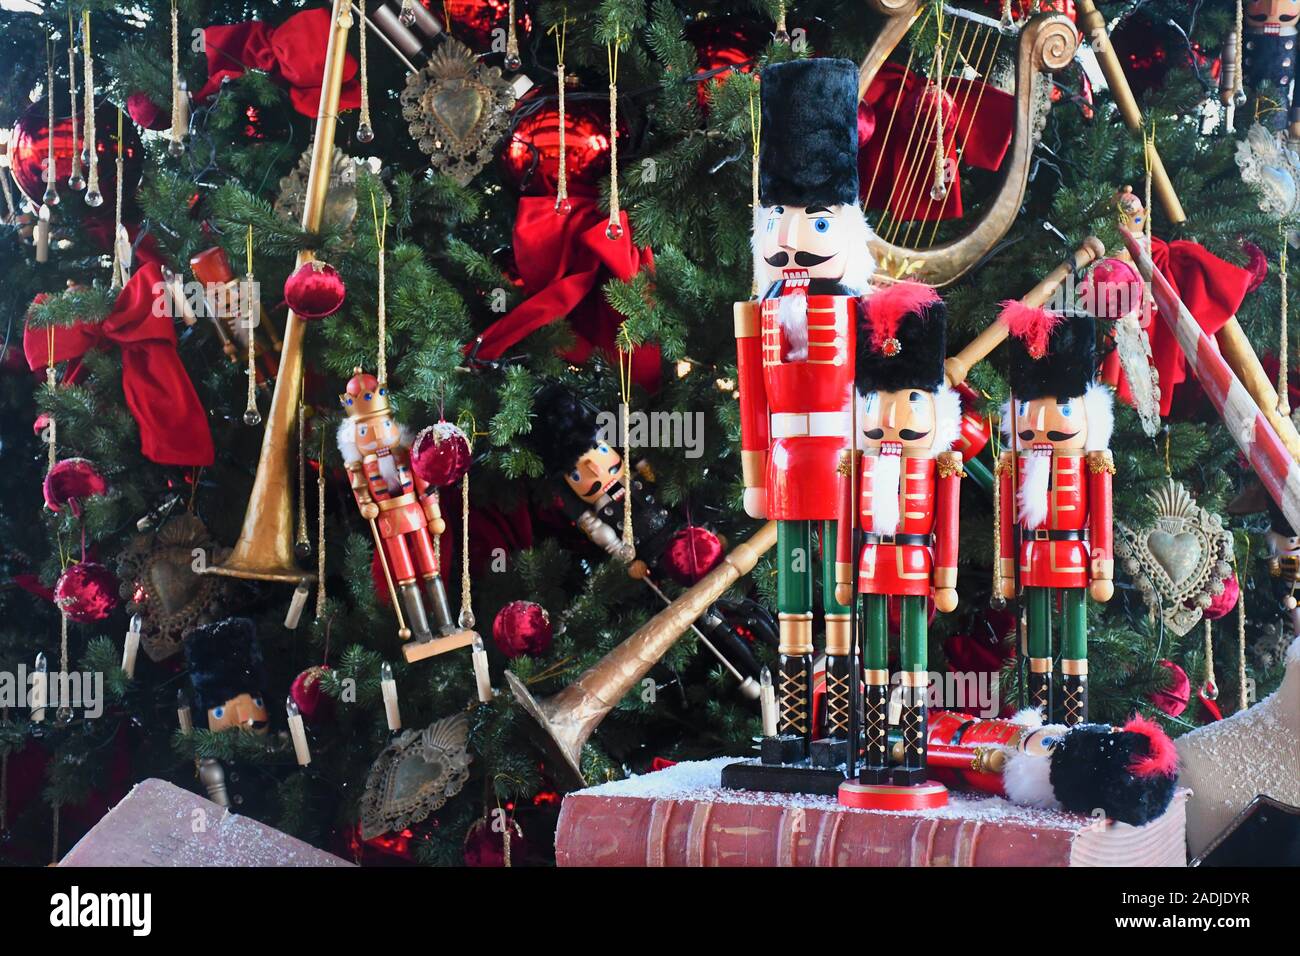 Casse-noisette soldat statue en bois debout devant l'arbre de Noël décoré sur un vieux livre Banque D'Images